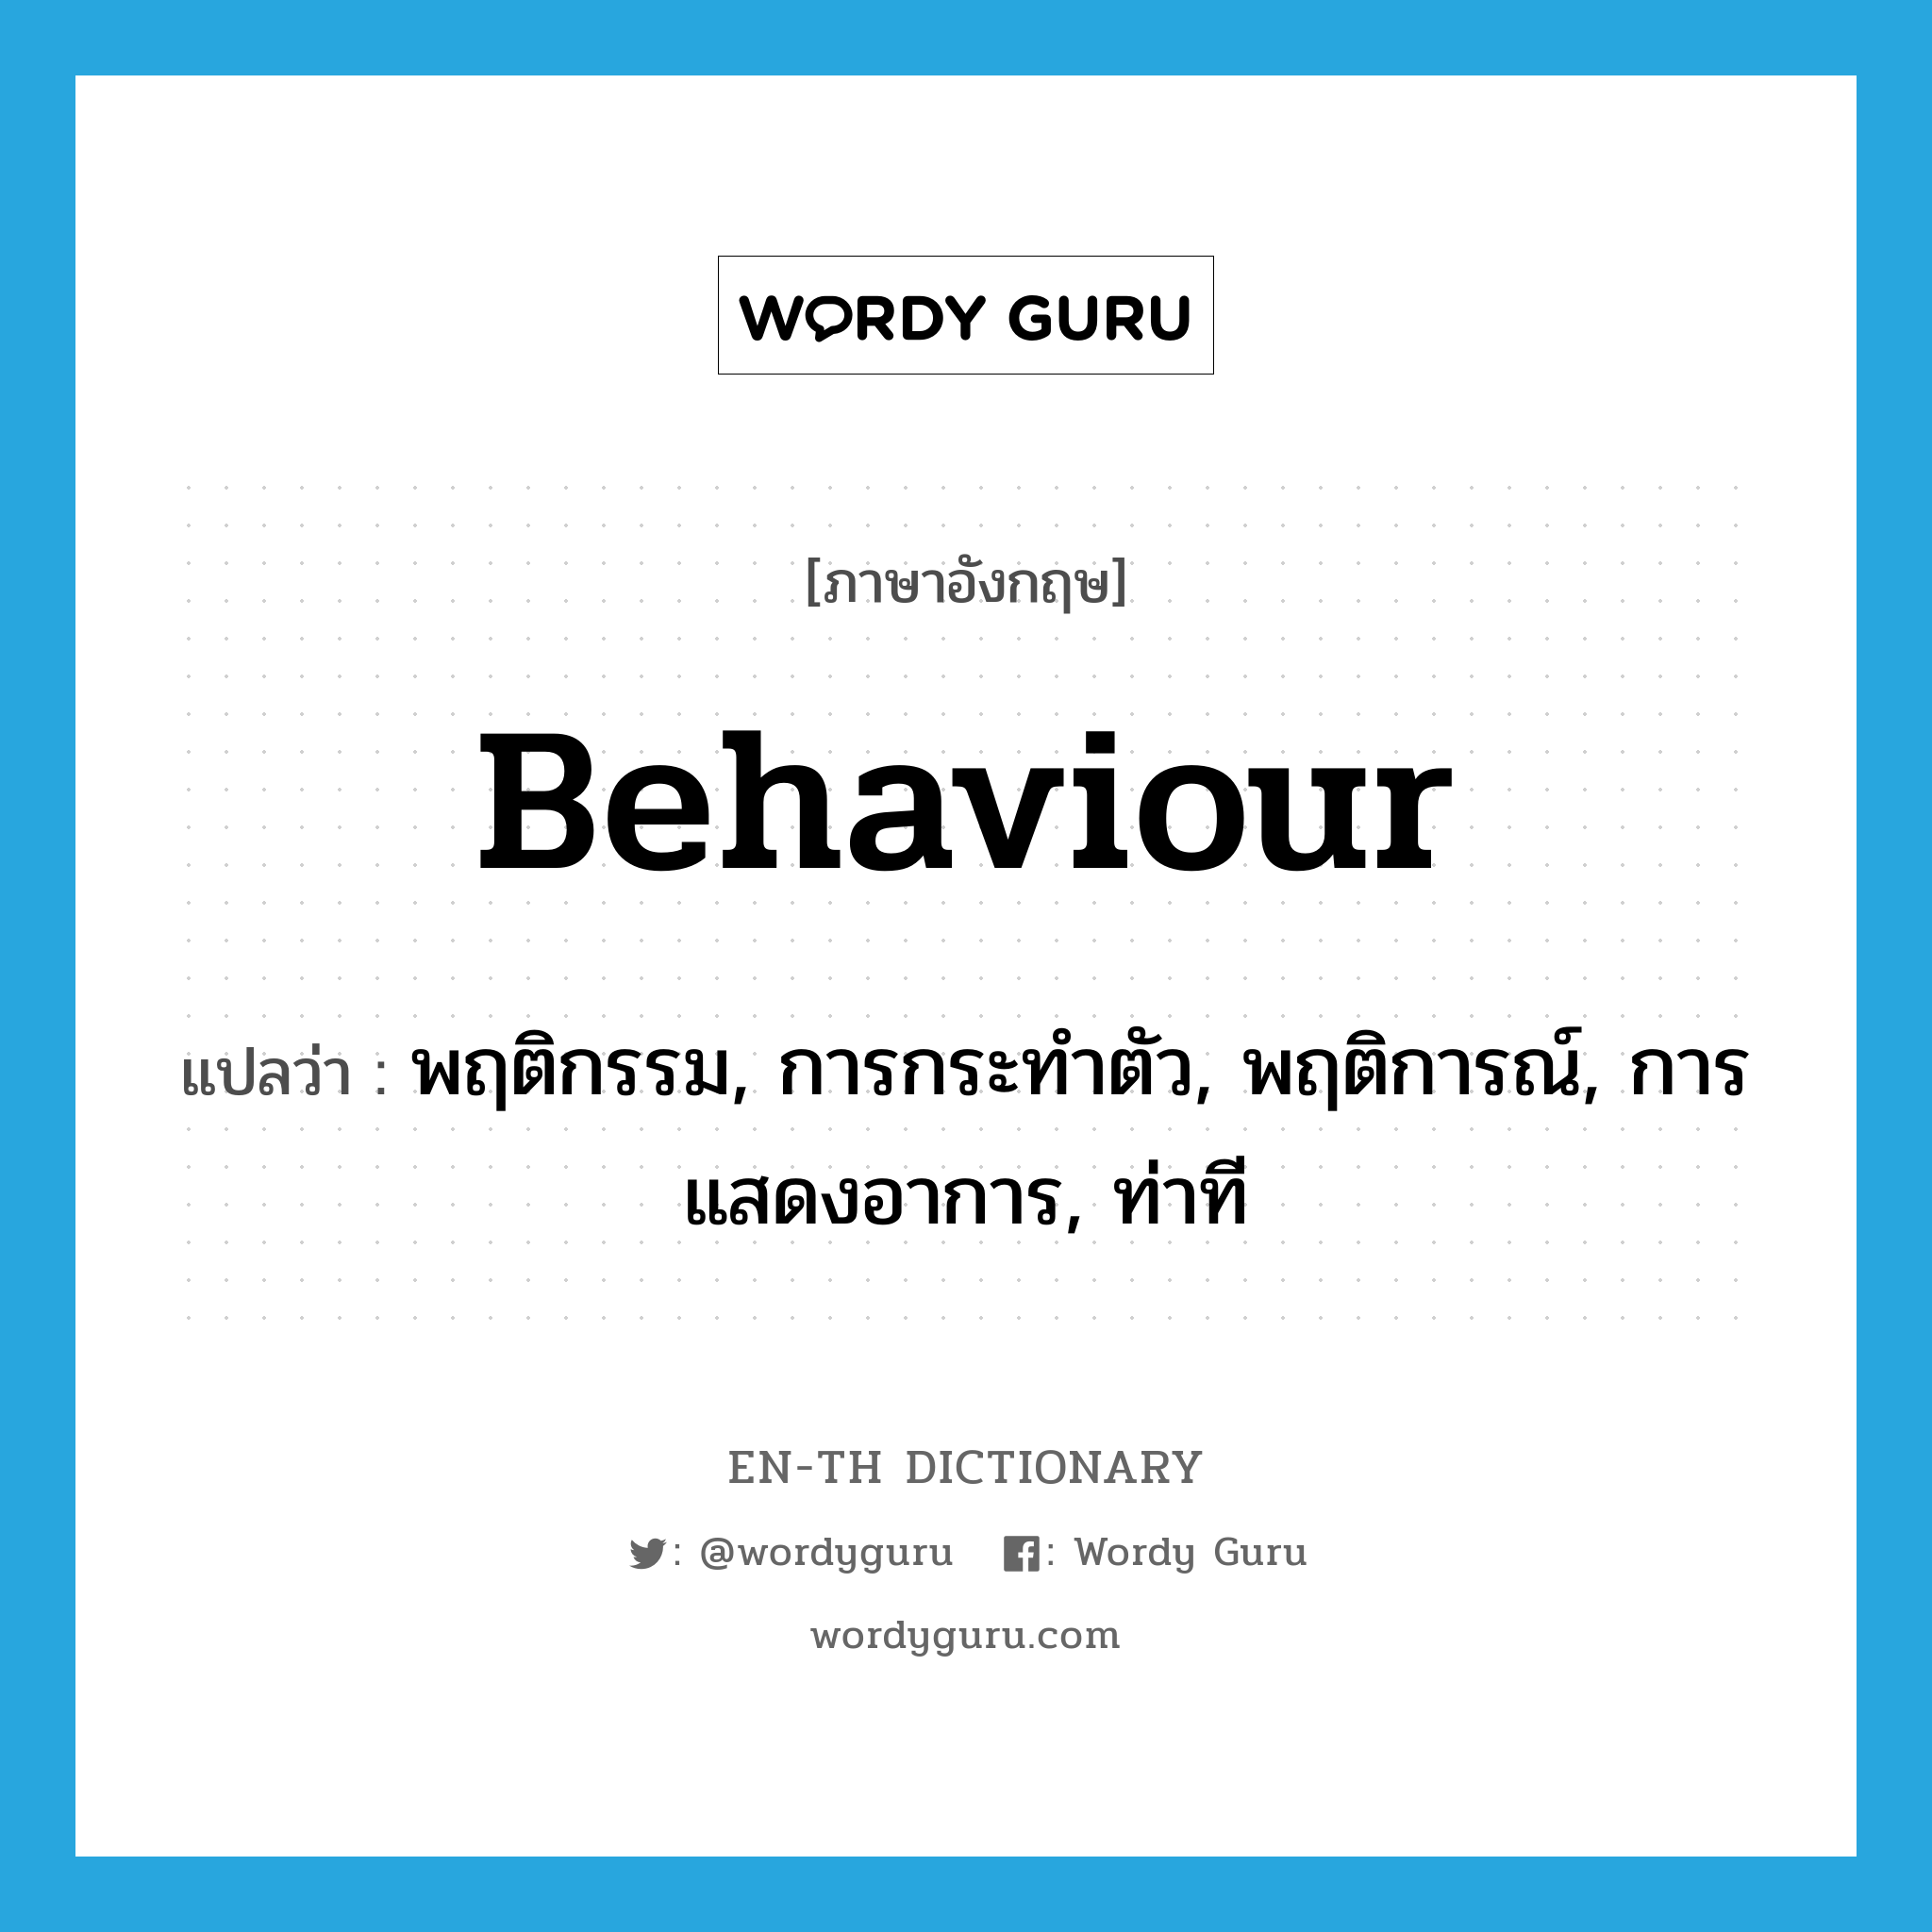 พฤติกรรม, การกระทำตัว, พฤติการณ์, การแสดงอาการ, ท่าที ภาษาอังกฤษ?, คำศัพท์ภาษาอังกฤษ พฤติกรรม, การกระทำตัว, พฤติการณ์, การแสดงอาการ, ท่าที แปลว่า behaviour ประเภท N หมวด N